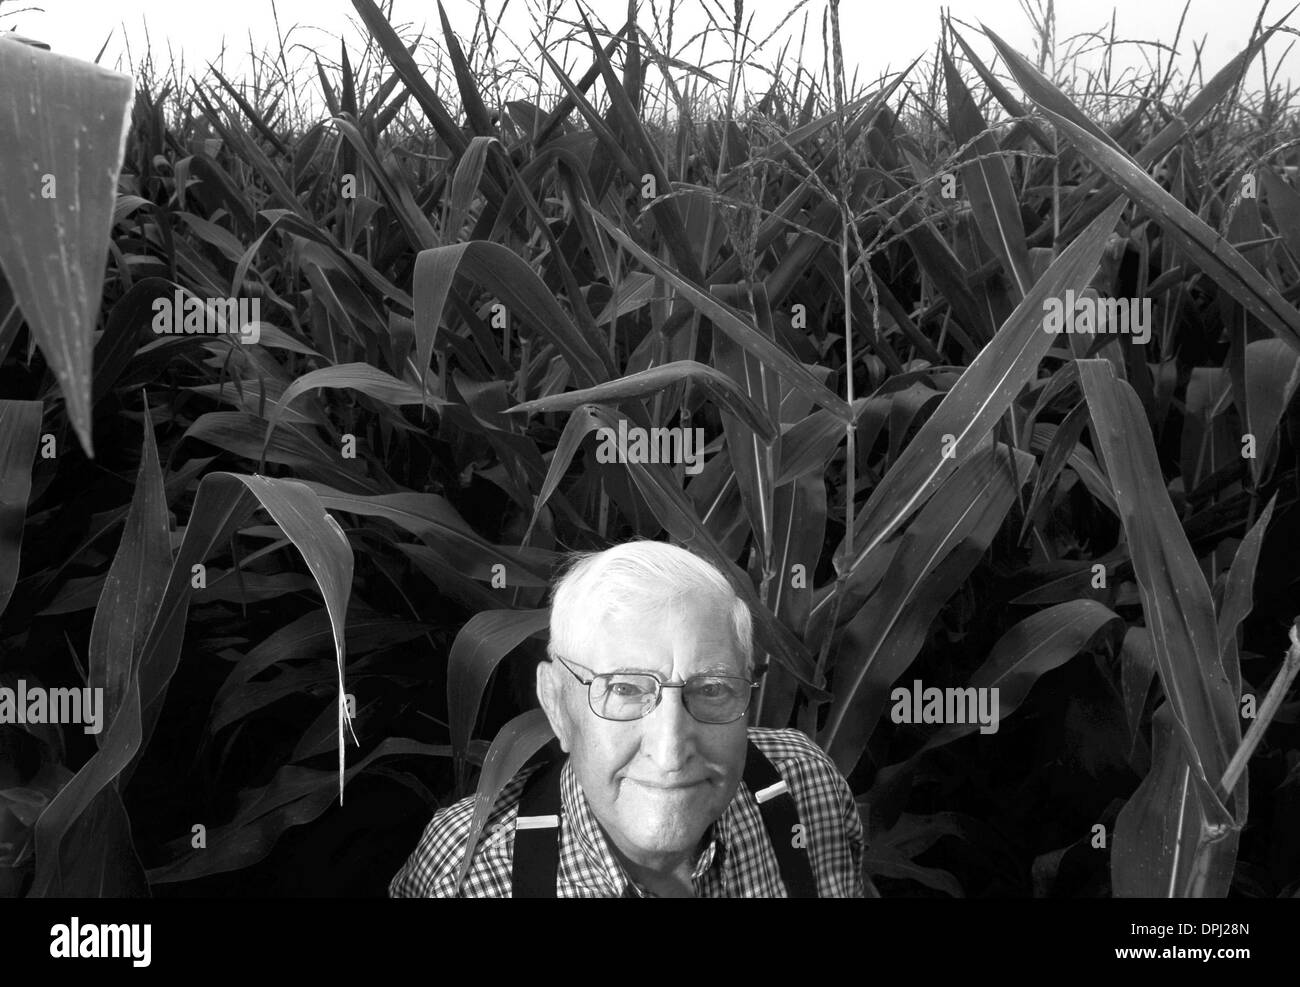 Mar 24, 2006 - Tremont, Illinois, Stati Uniti - CHRIS SCHWEIGERT, Età: 91. Occupazione: l'agricoltore. Natale: Tremont, Illinois. Gli anziani d'America stanno lavorando più tardi e più tardi in anni. Molte persone in tutta l'America stanno ancora lavorando lungo passato l'età media di pensionamento. (Credito Immagine: © Chris Curry/zReportage.com/ZUMA) Foto Stock